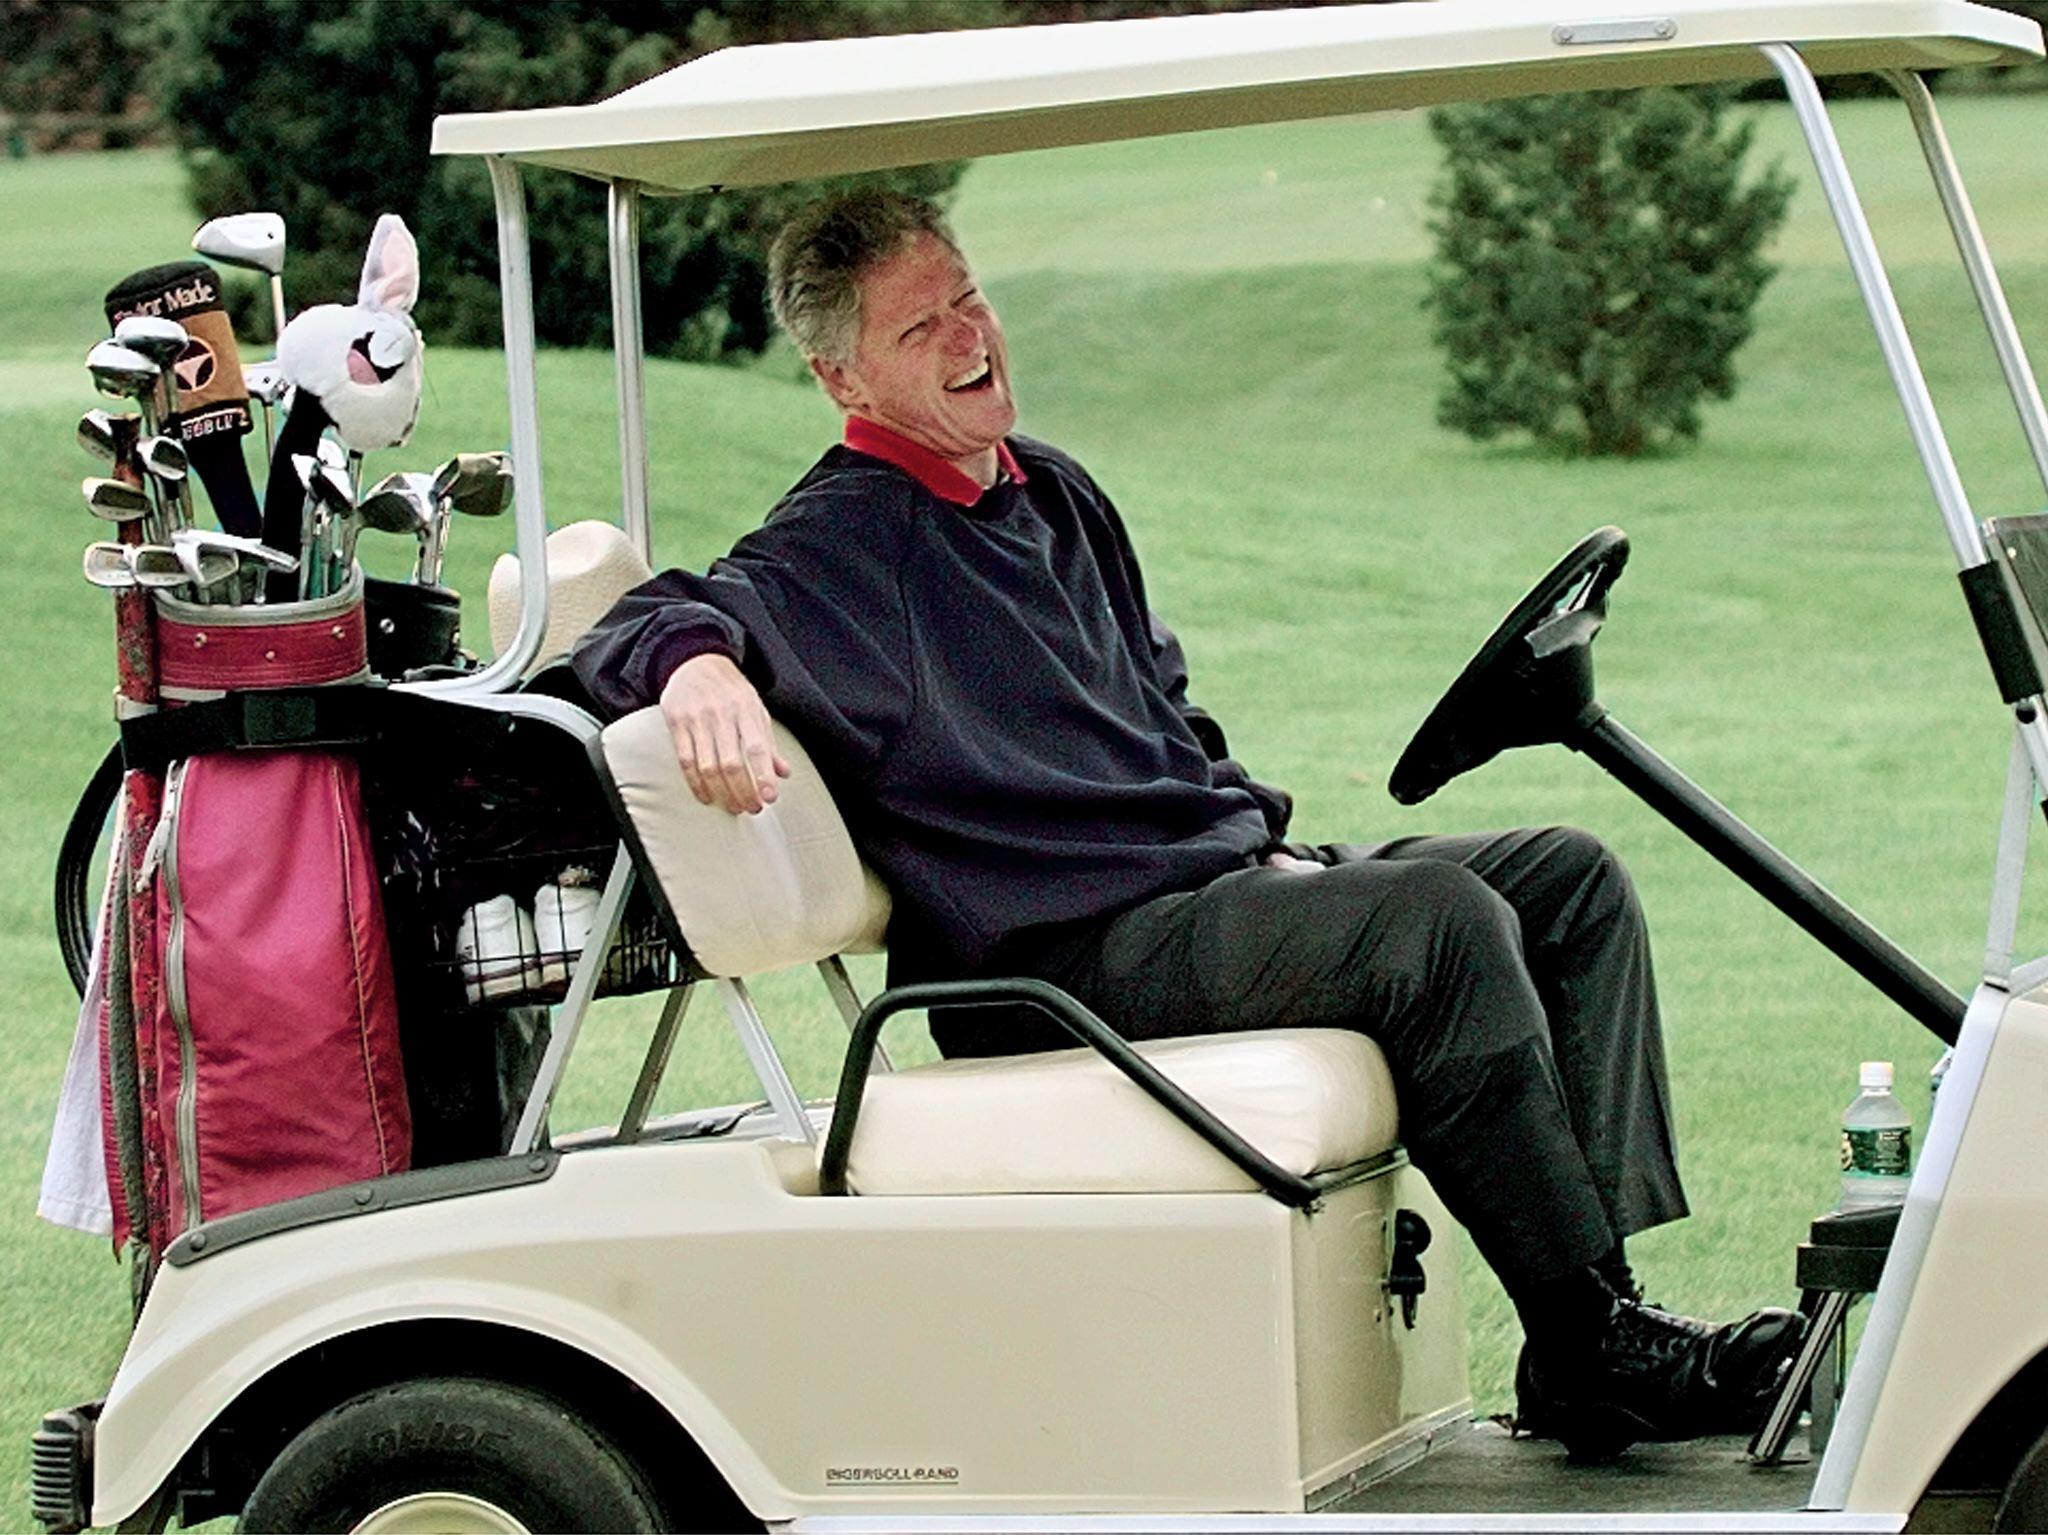 US President Bill Clinton golfing